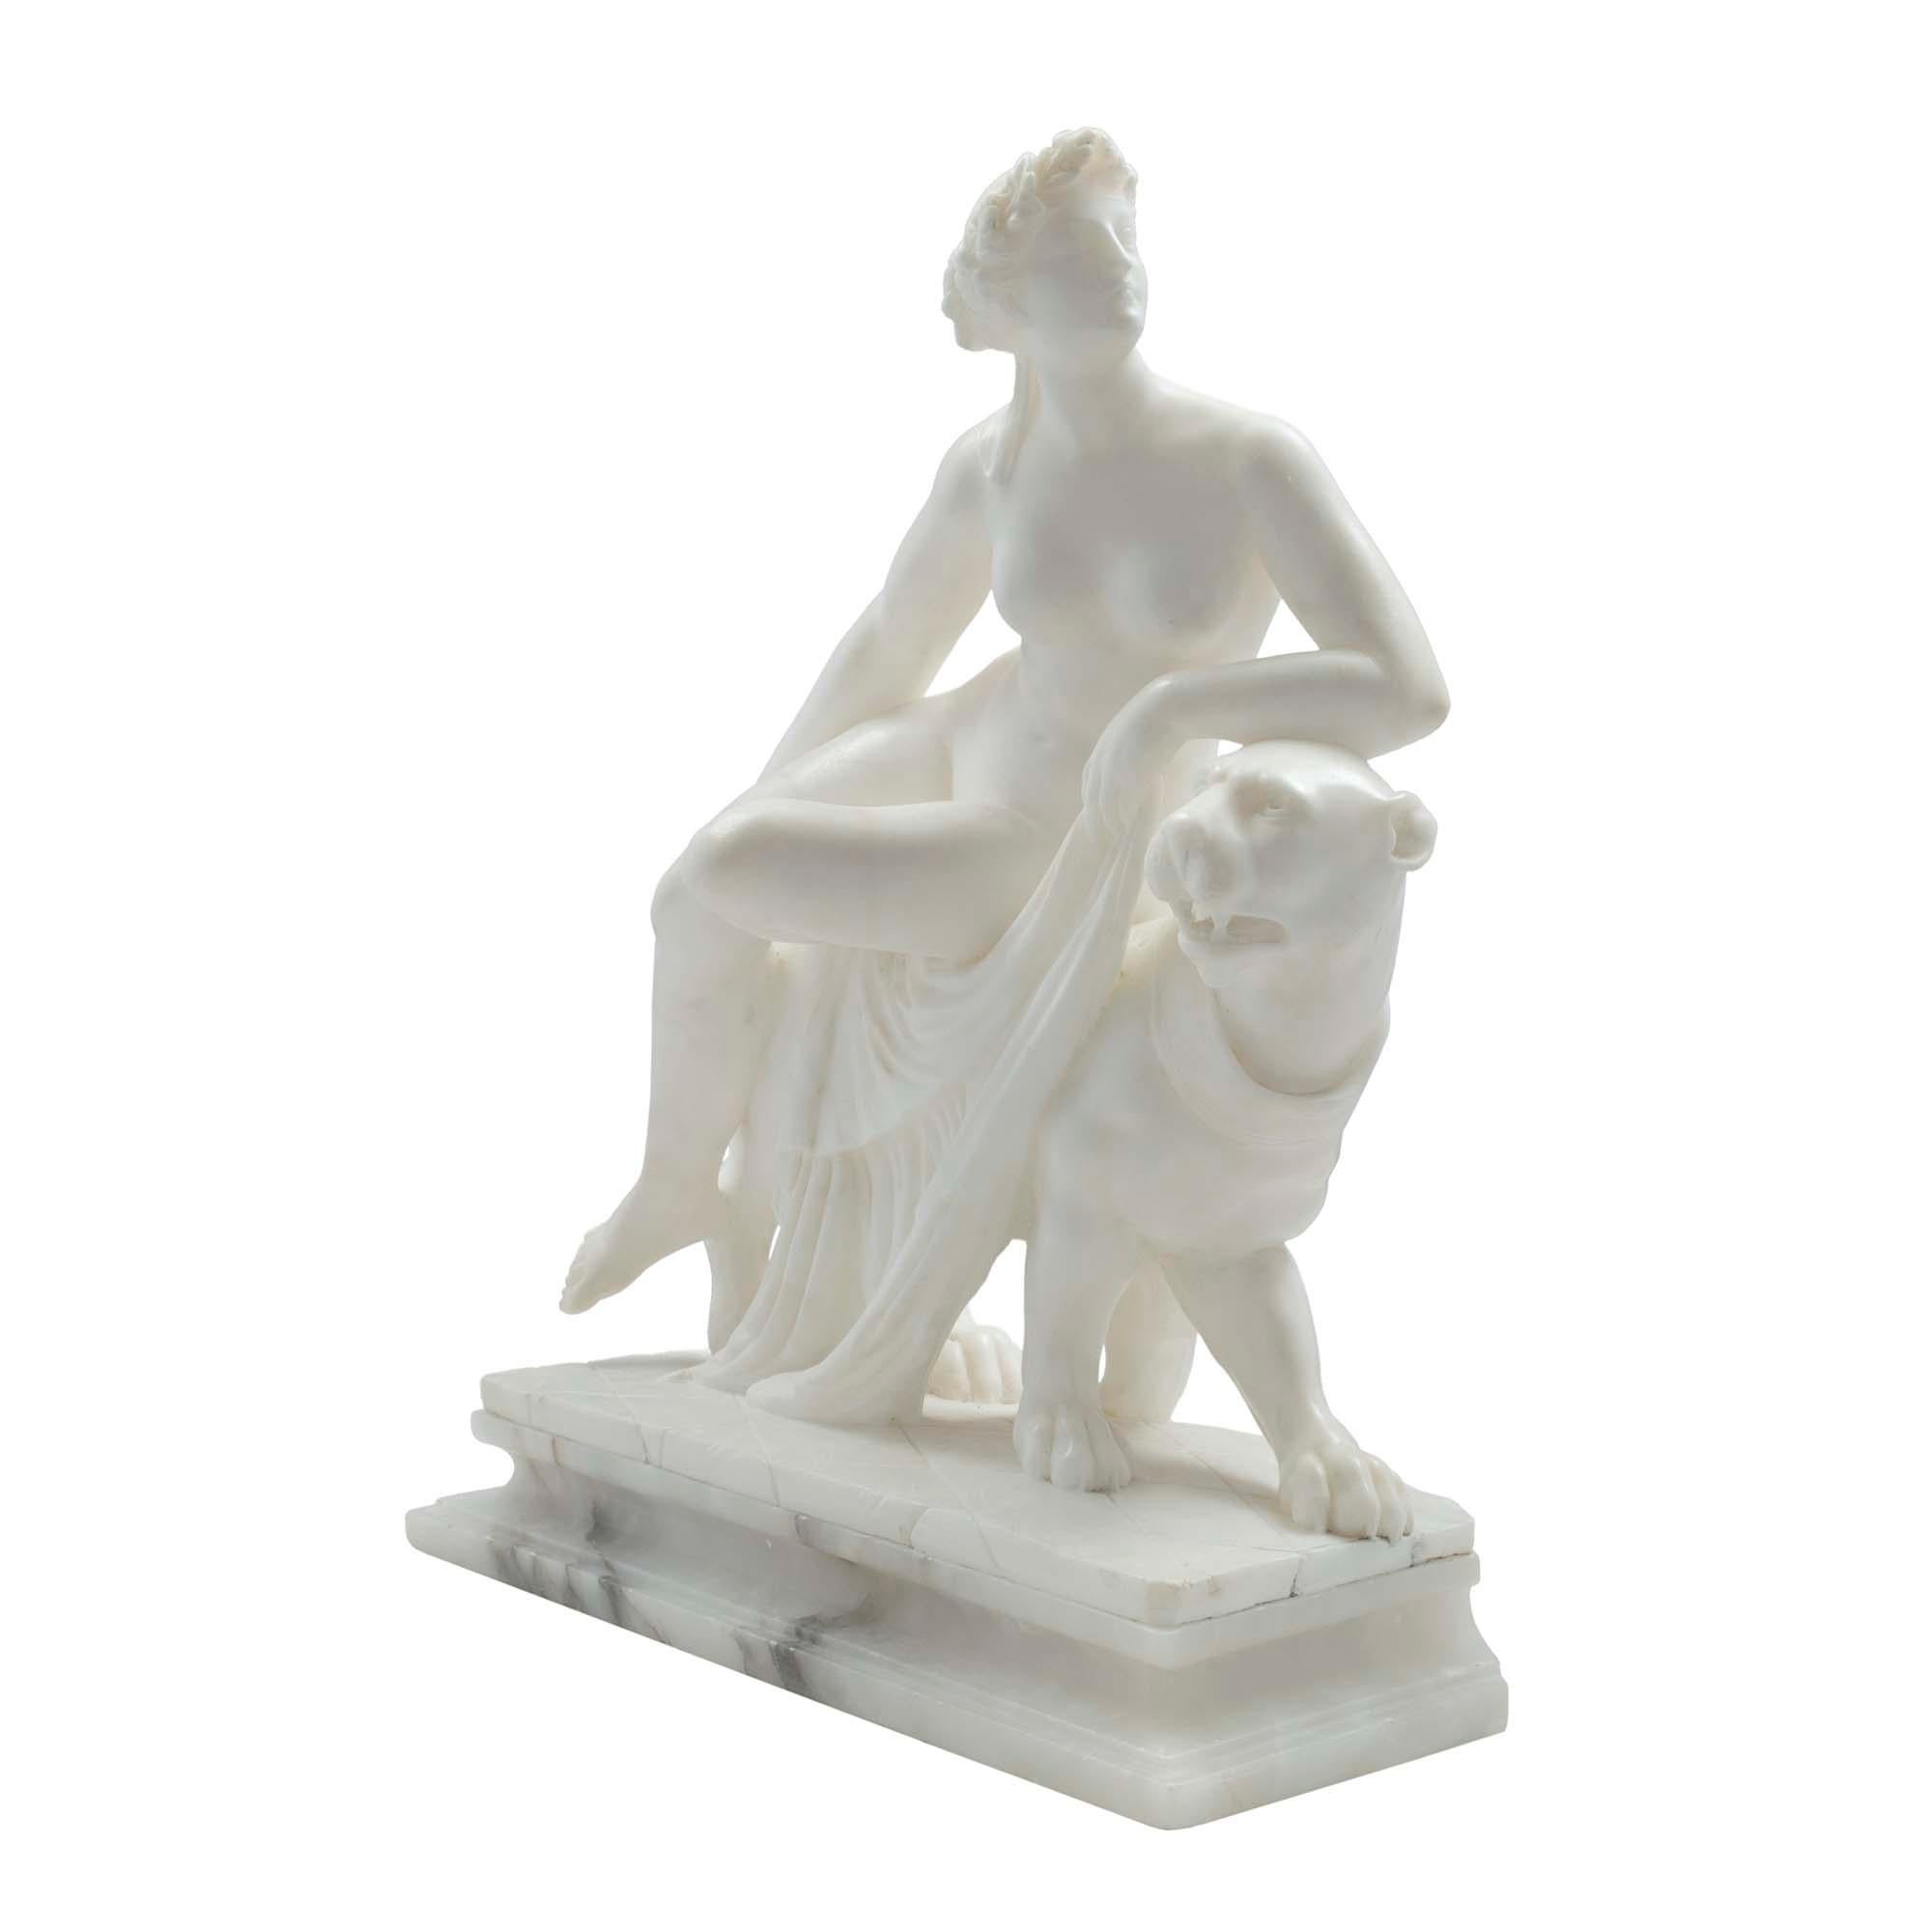 Élégante et décorative statue italienne du XIXe siècle en albâtre et marbre représentant une déesse grecque Ariane assise sur sa panthère. Regardant vers sa gauche tandis que son coude repose sur sa tête de panthère, elle tient un vêtement de